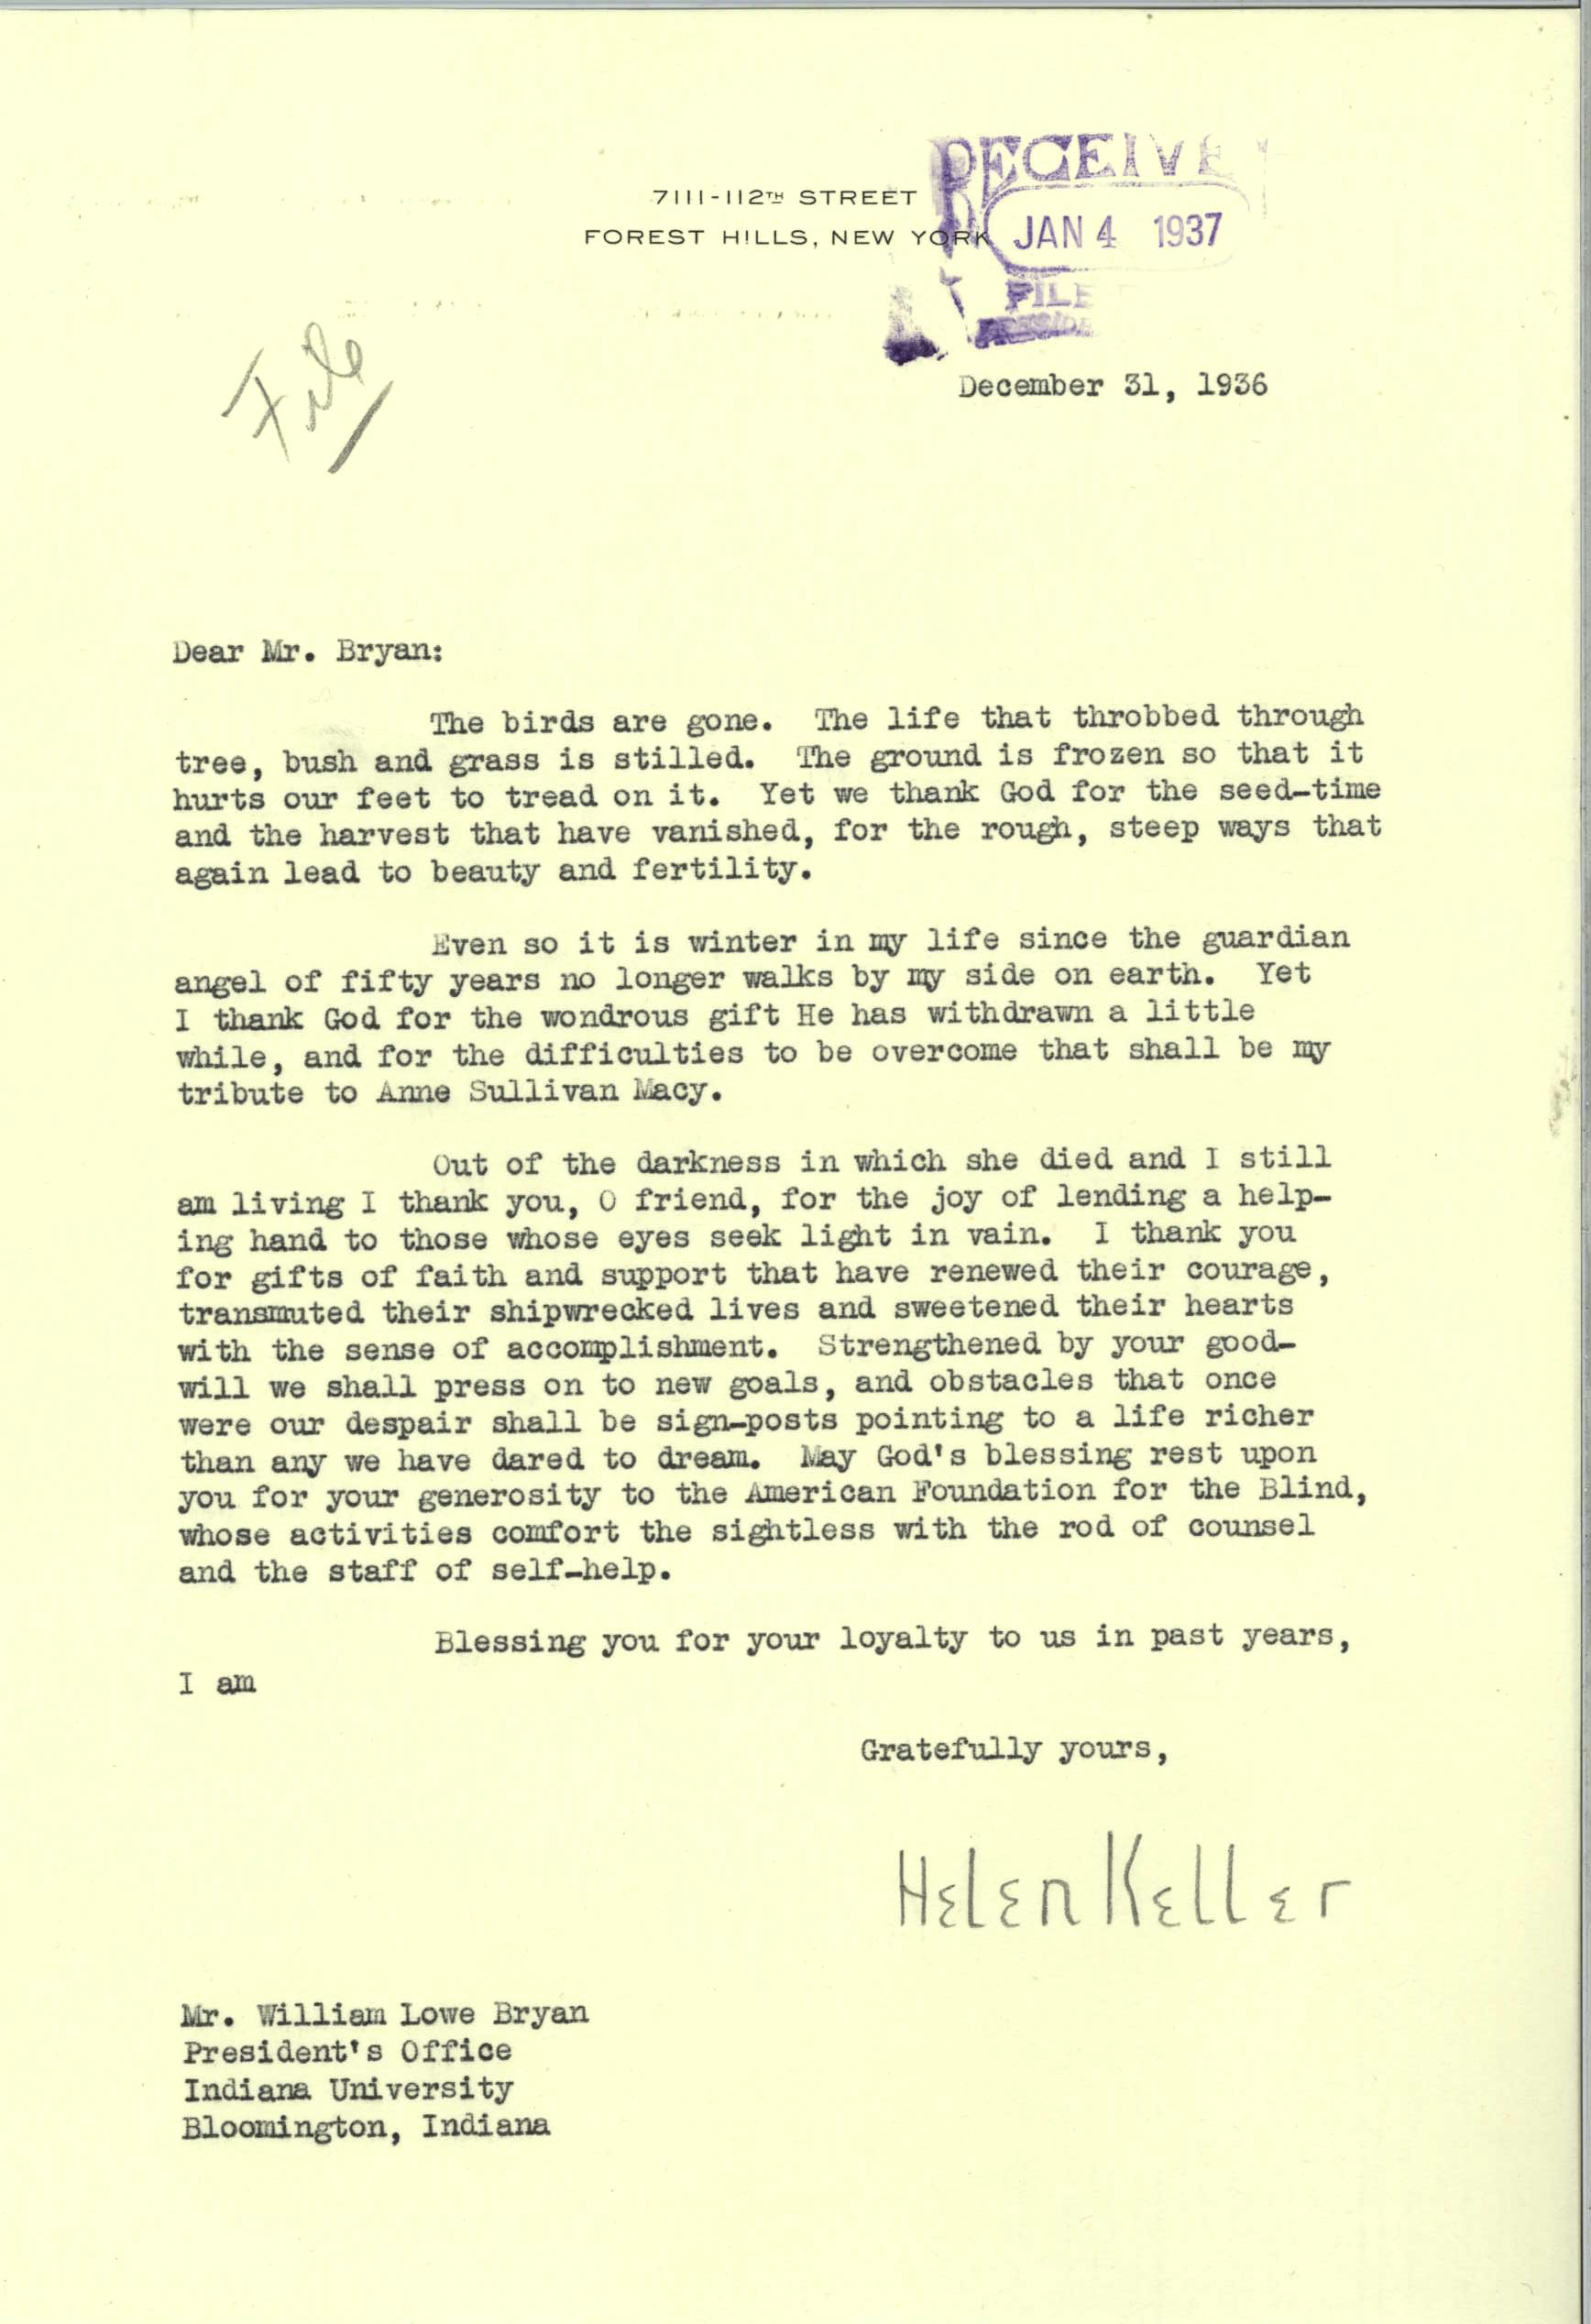 Helen Keller to William Lowe Bryan, December 31, 1936